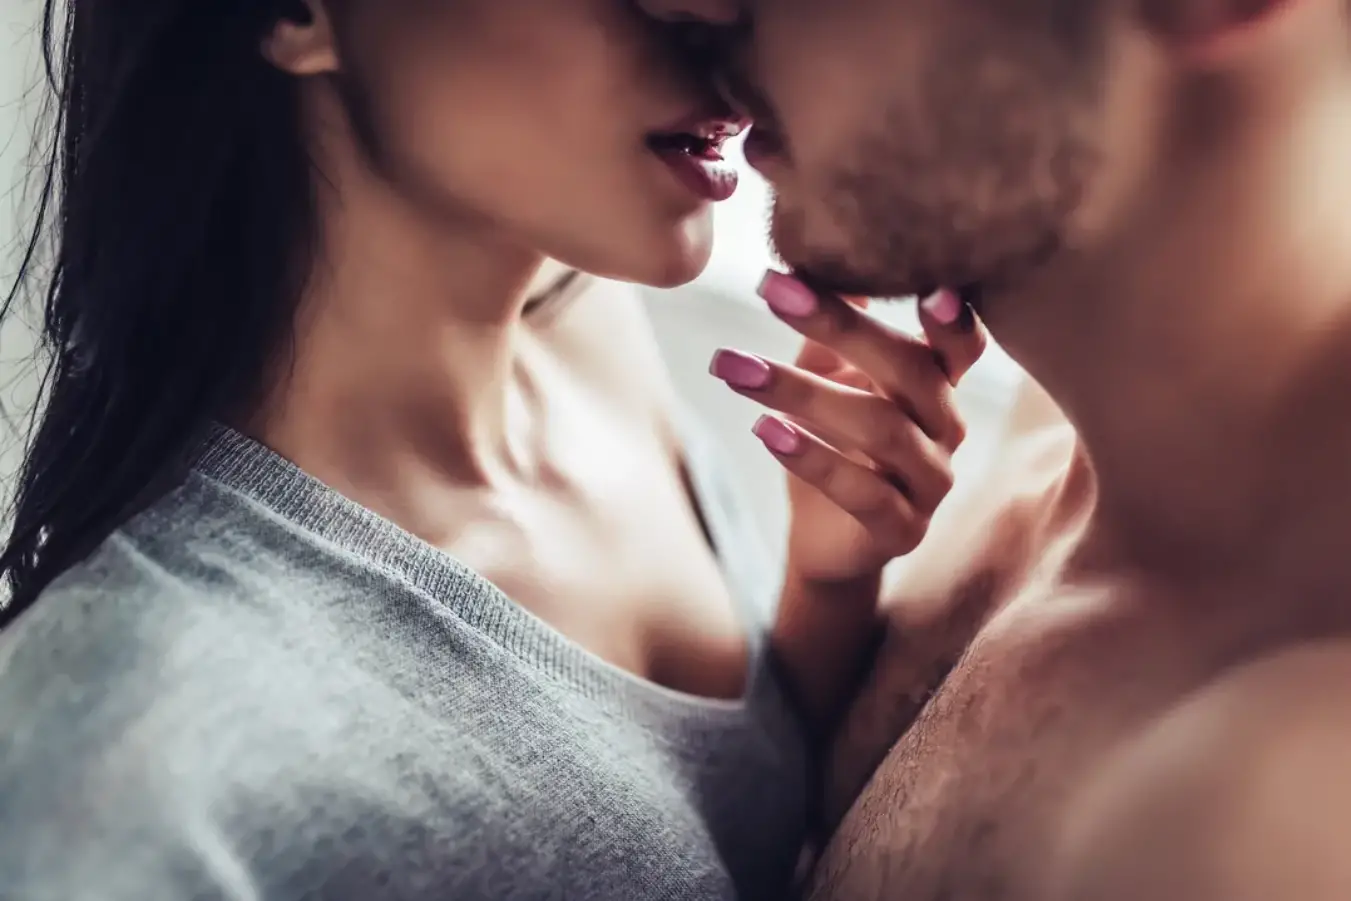 juegos eroticos para parejas besos sexys.jpg